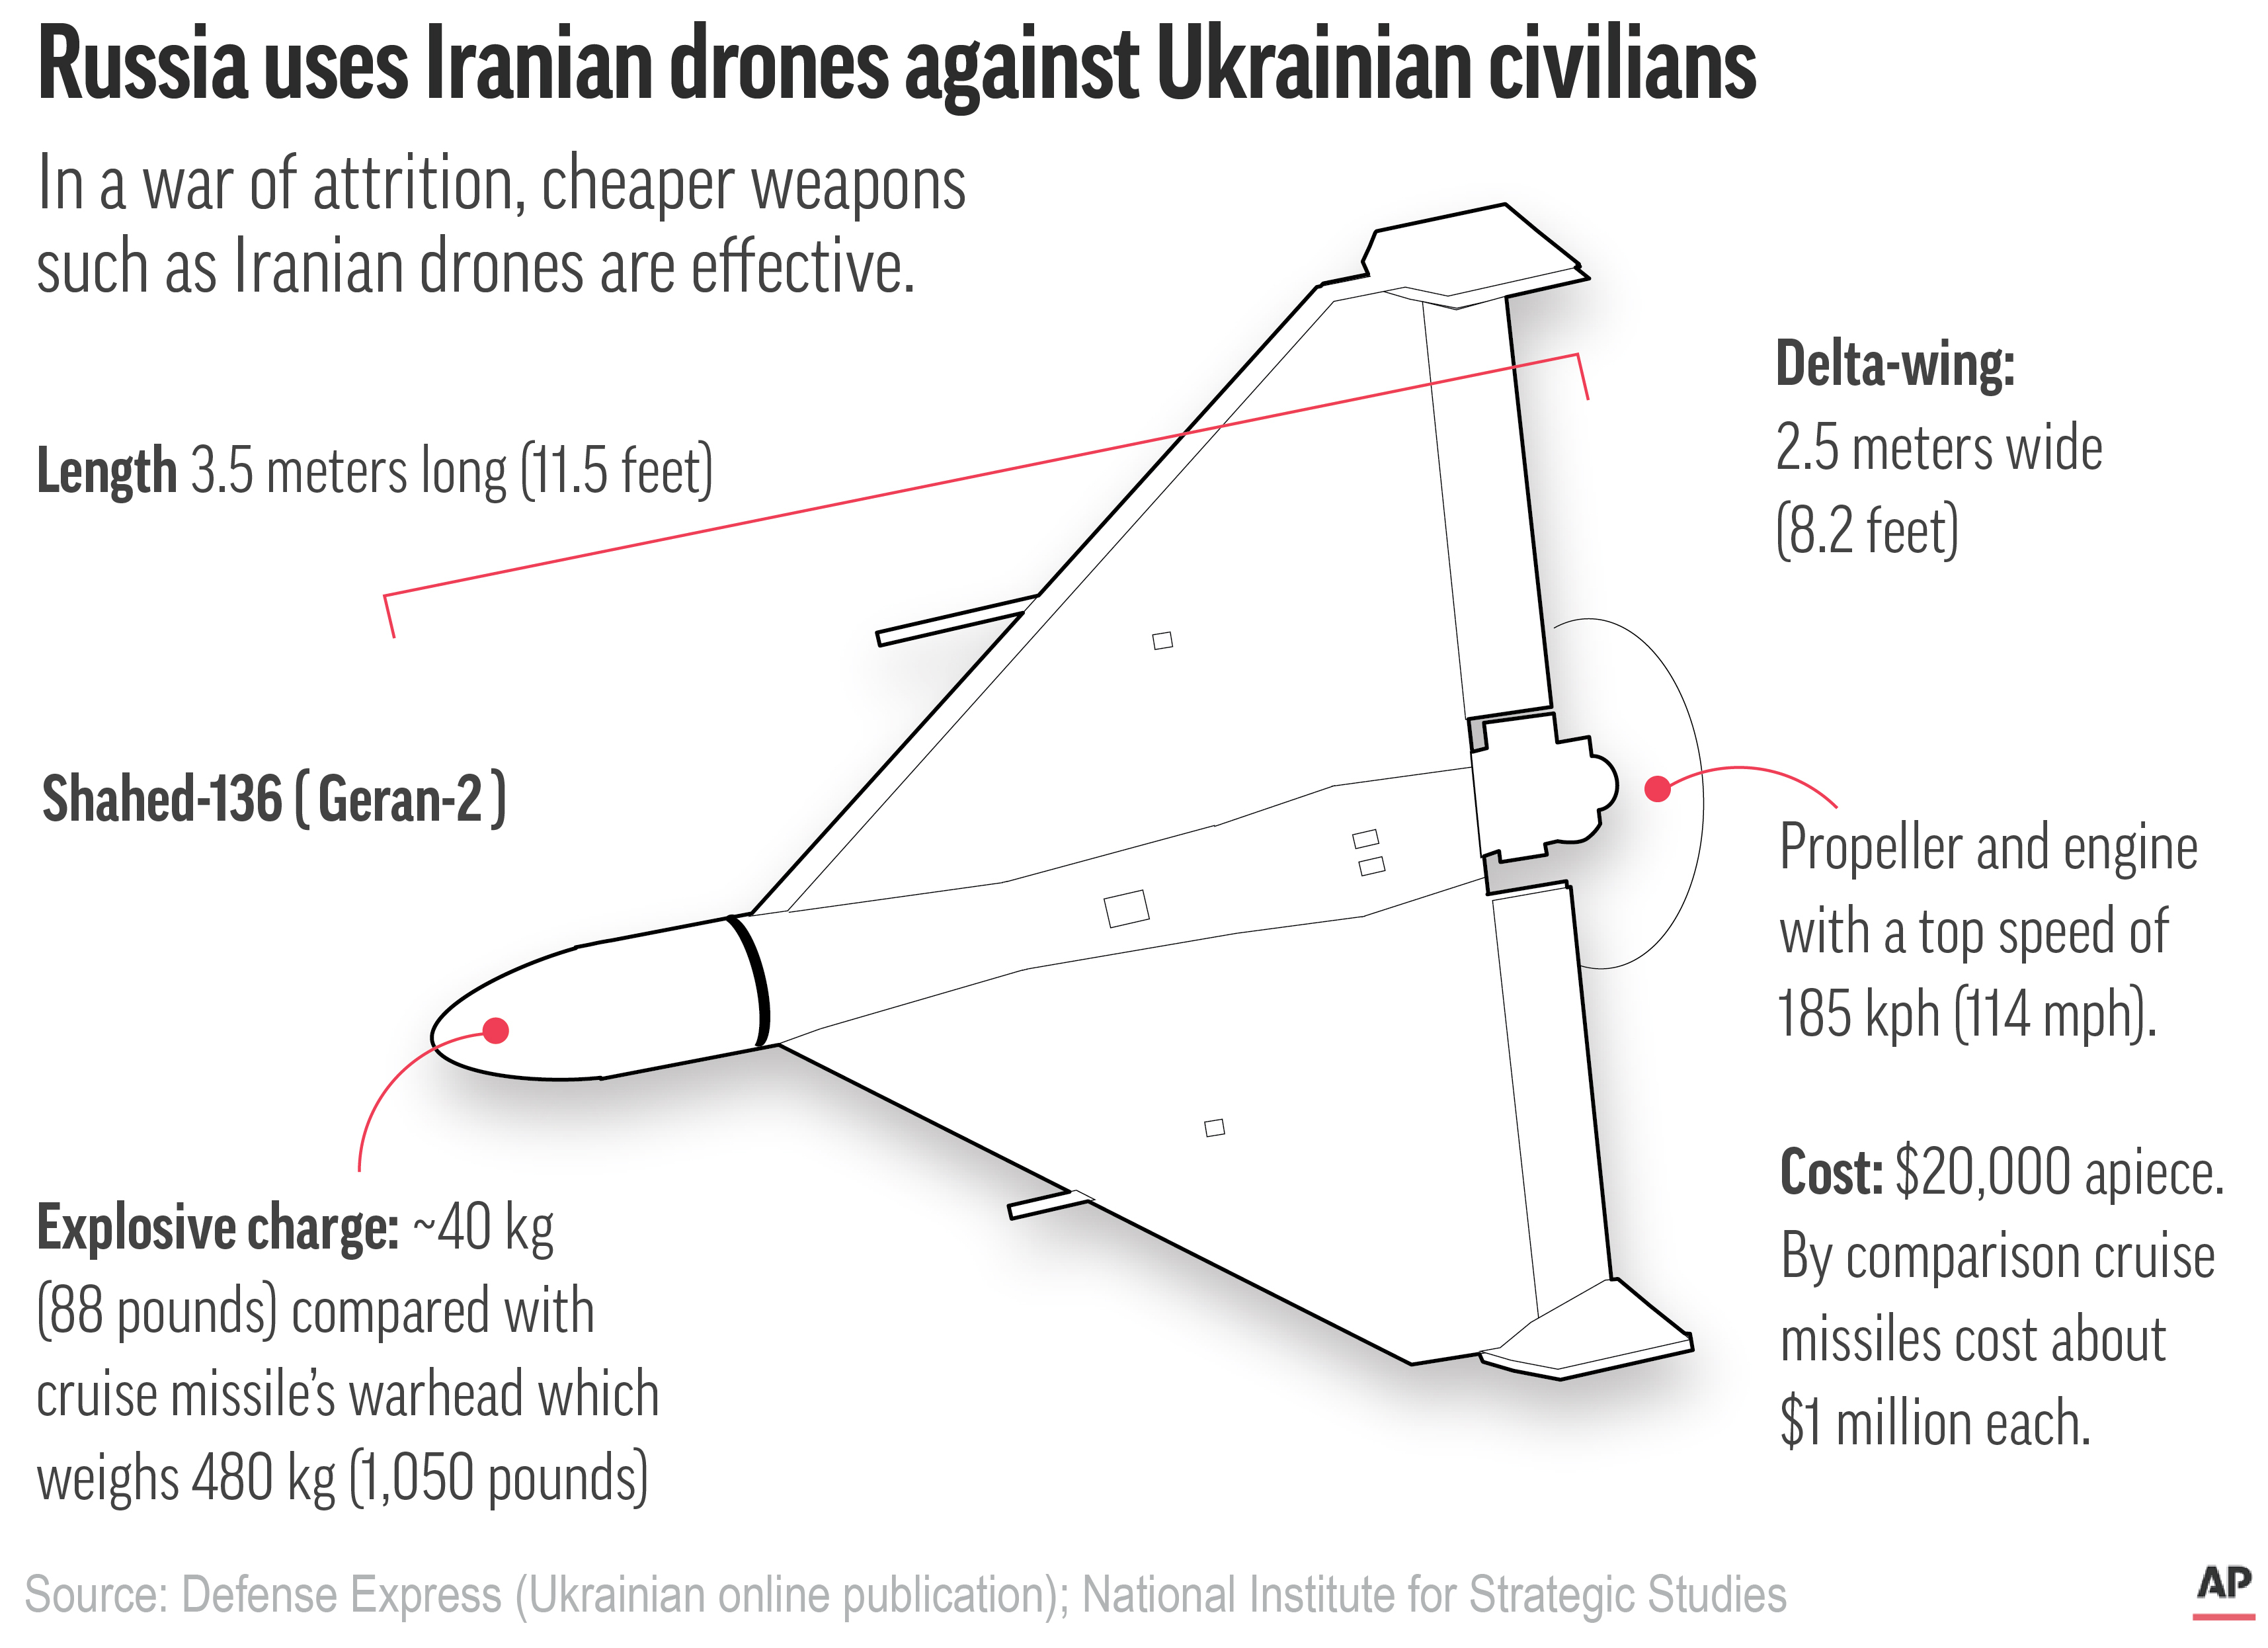 Drones strike fear in Ukraine's capital, killing 4